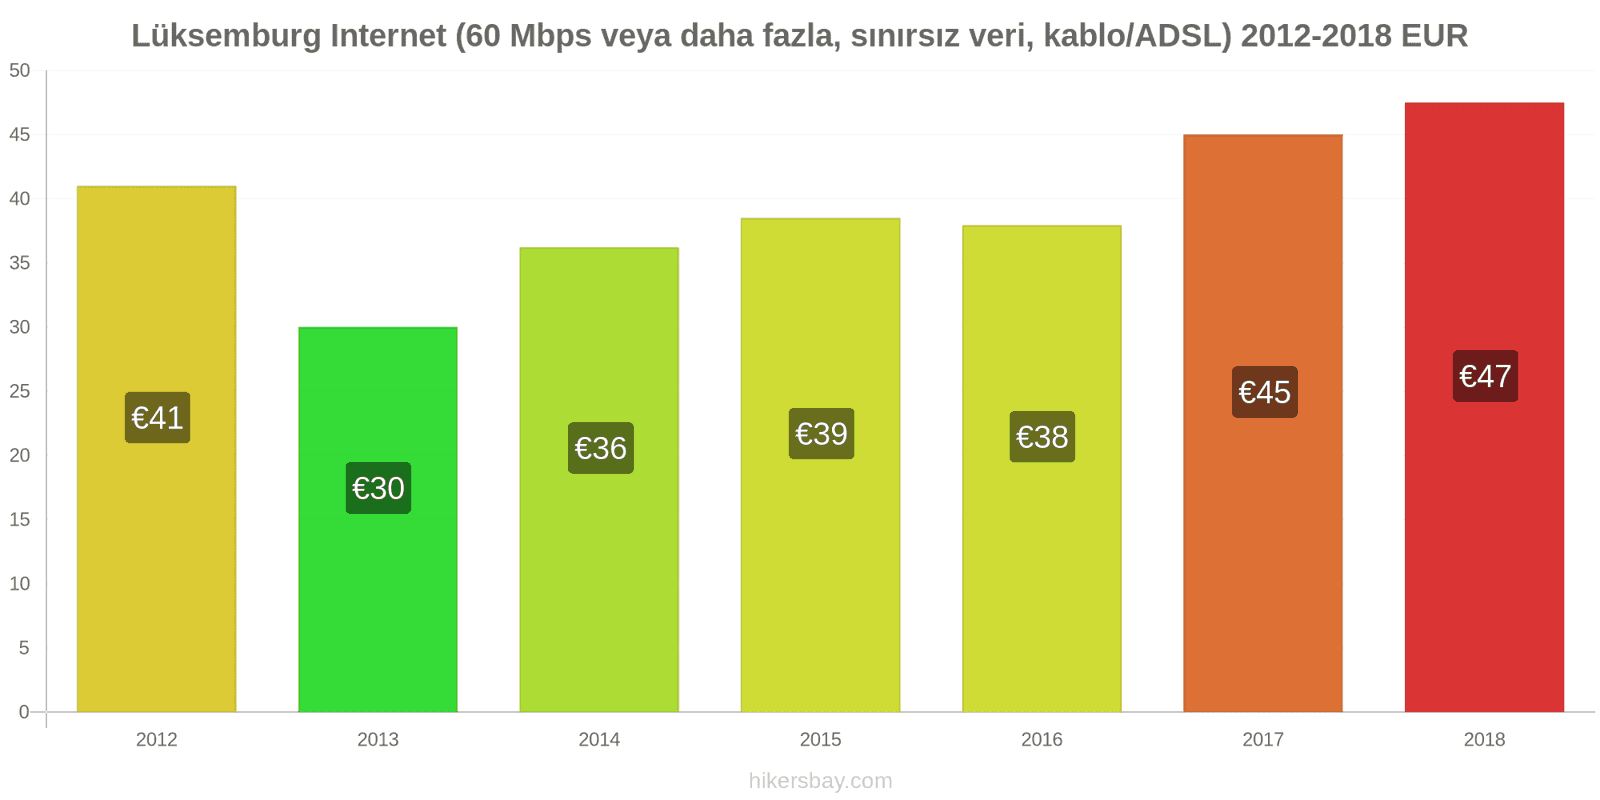 Lüksemburg fiyat değişiklikleri İnternet (60 Mbps veya daha fazla, sınırsız veri, kablo/ADSL) hikersbay.com